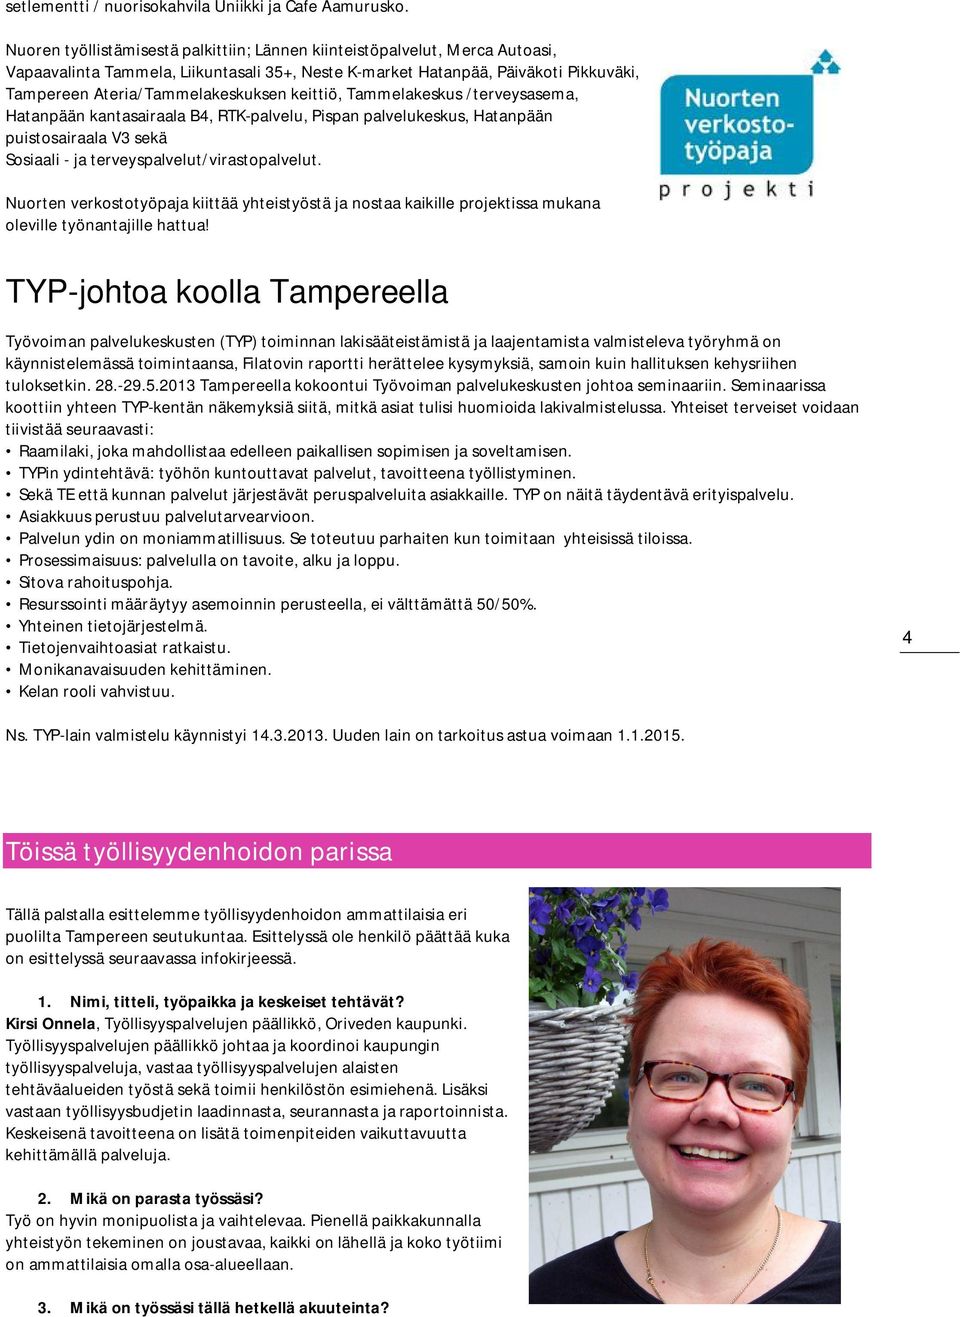 keittiö, Tammelakeskus /terveysasema, Hatanpään kantasairaala B4, RTK-palvelu, Pispan palvelukeskus, Hatanpään puistosairaala V3 sekä Sosiaali - ja terveyspalvelut/virastopalvelut.